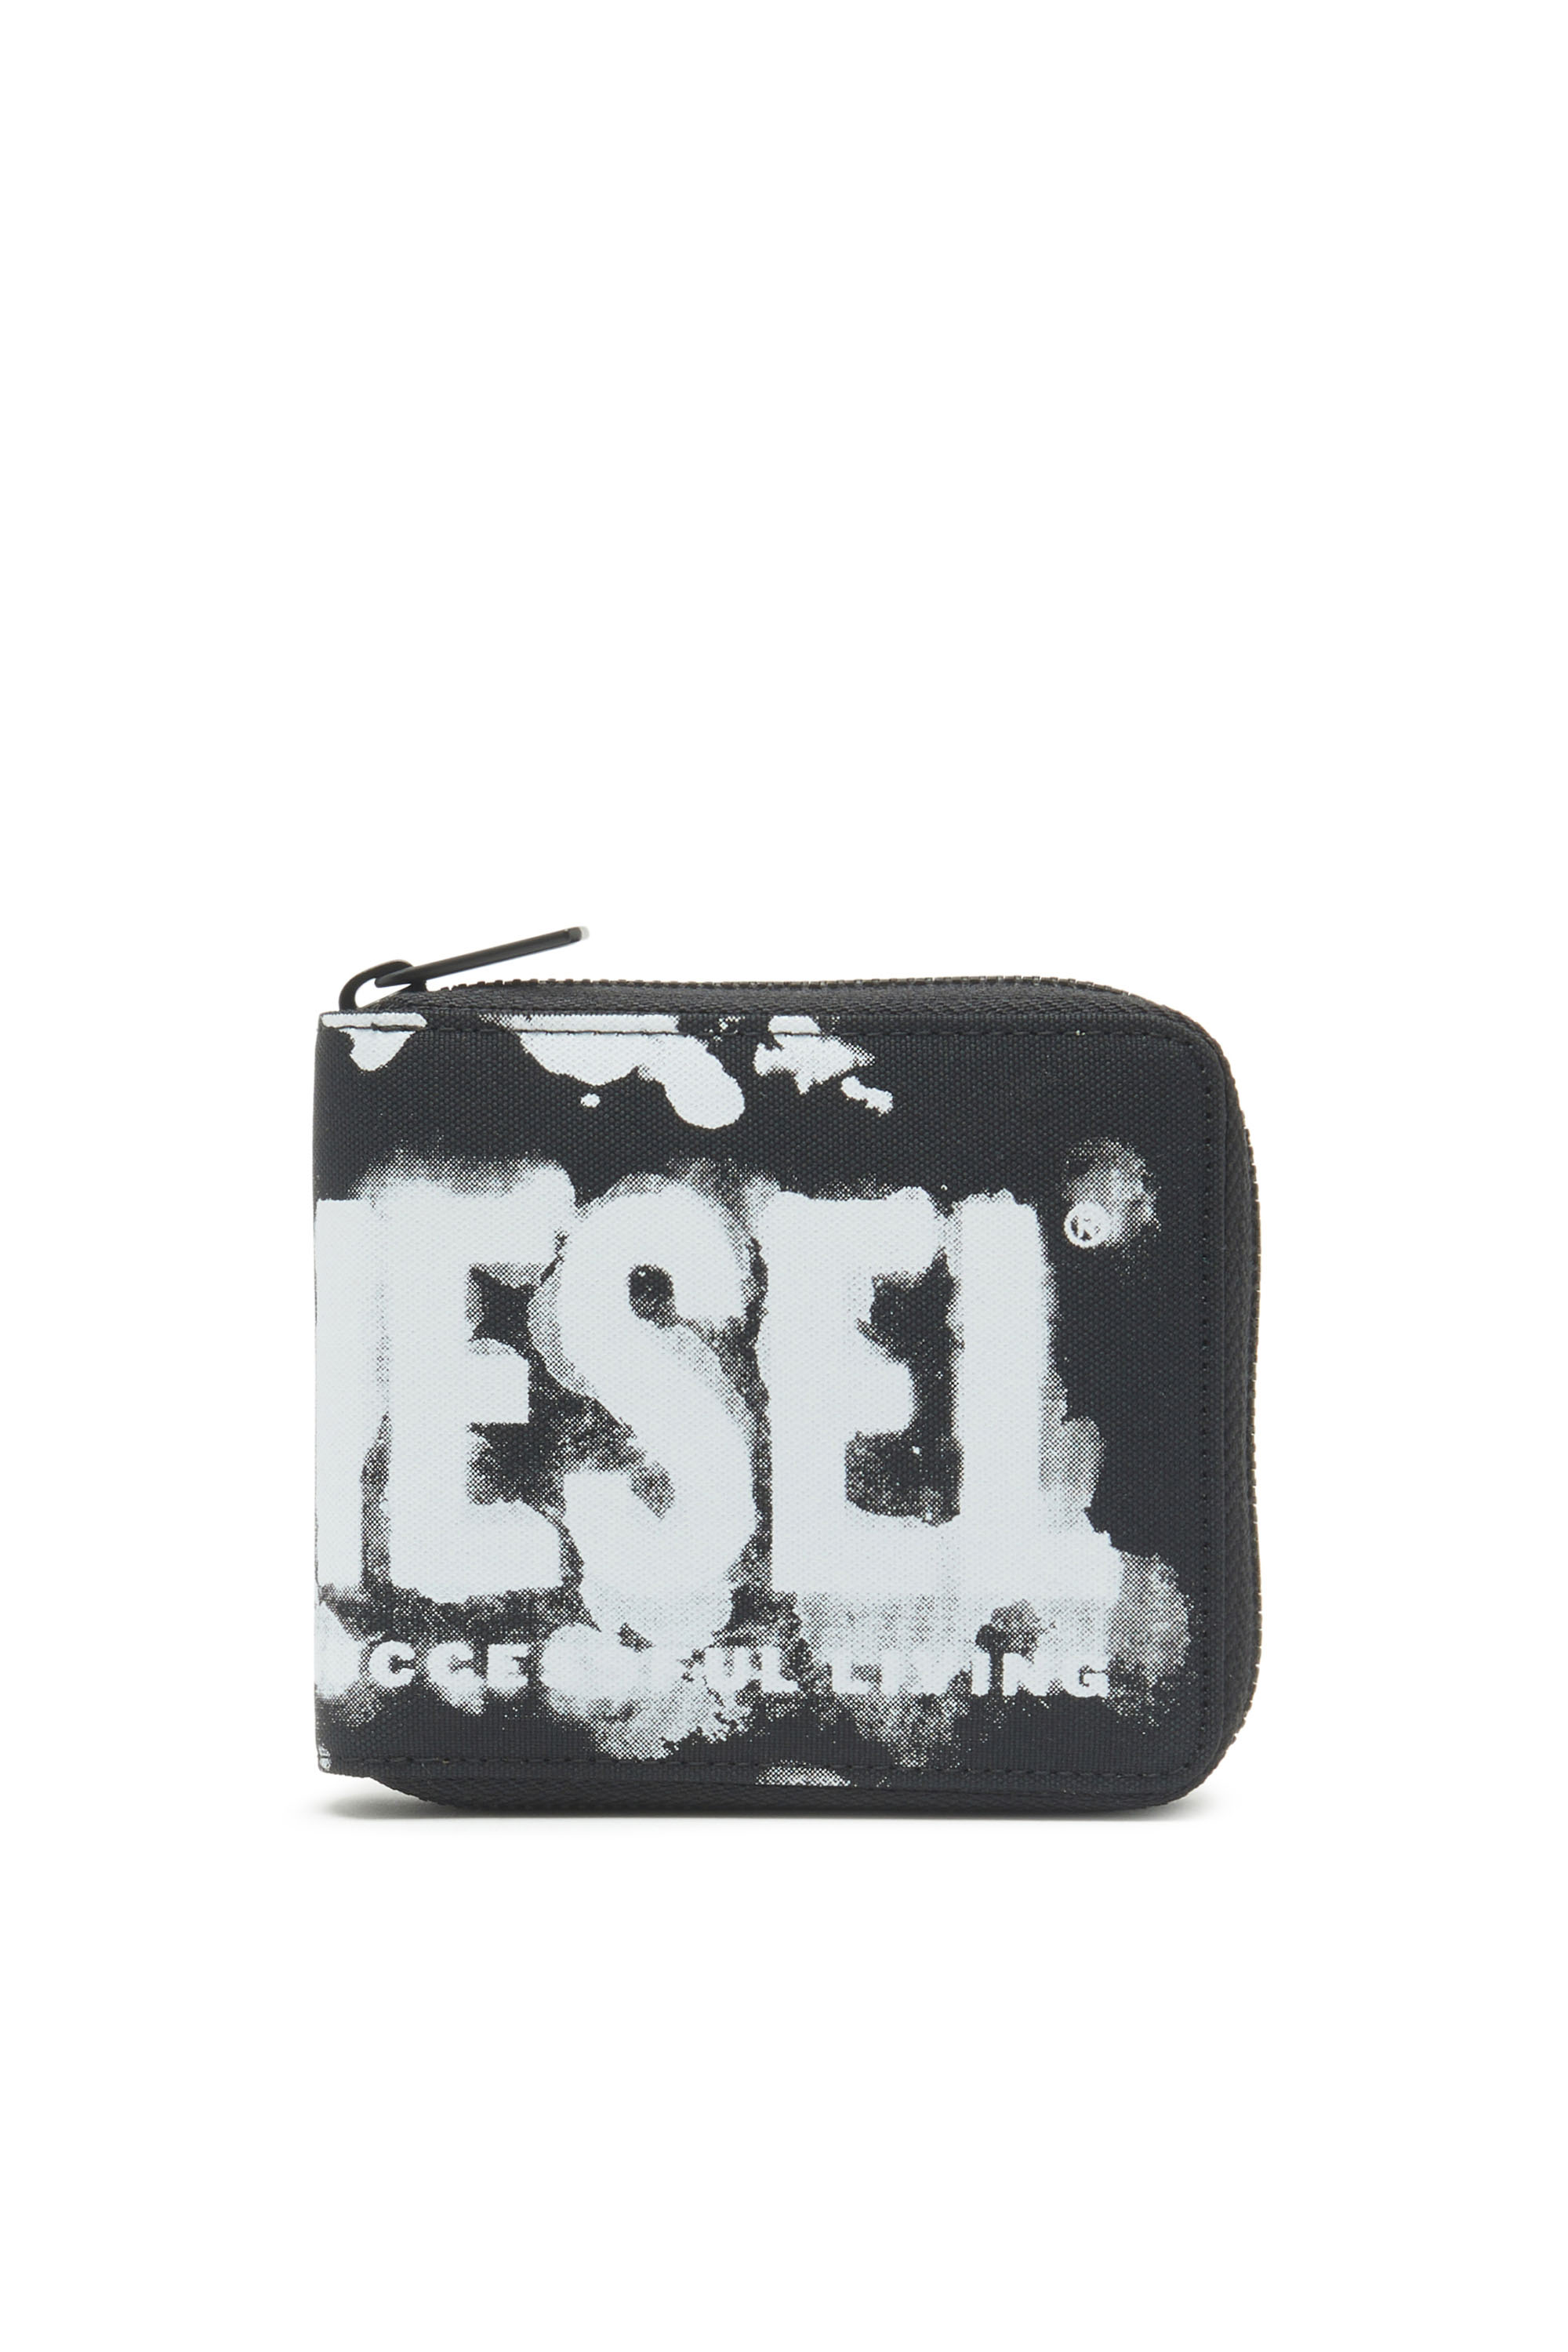 Diesel - Cartera con cremallera de tejido con el logotipo estampado - Monederos Pequeños - Unisex - Negro